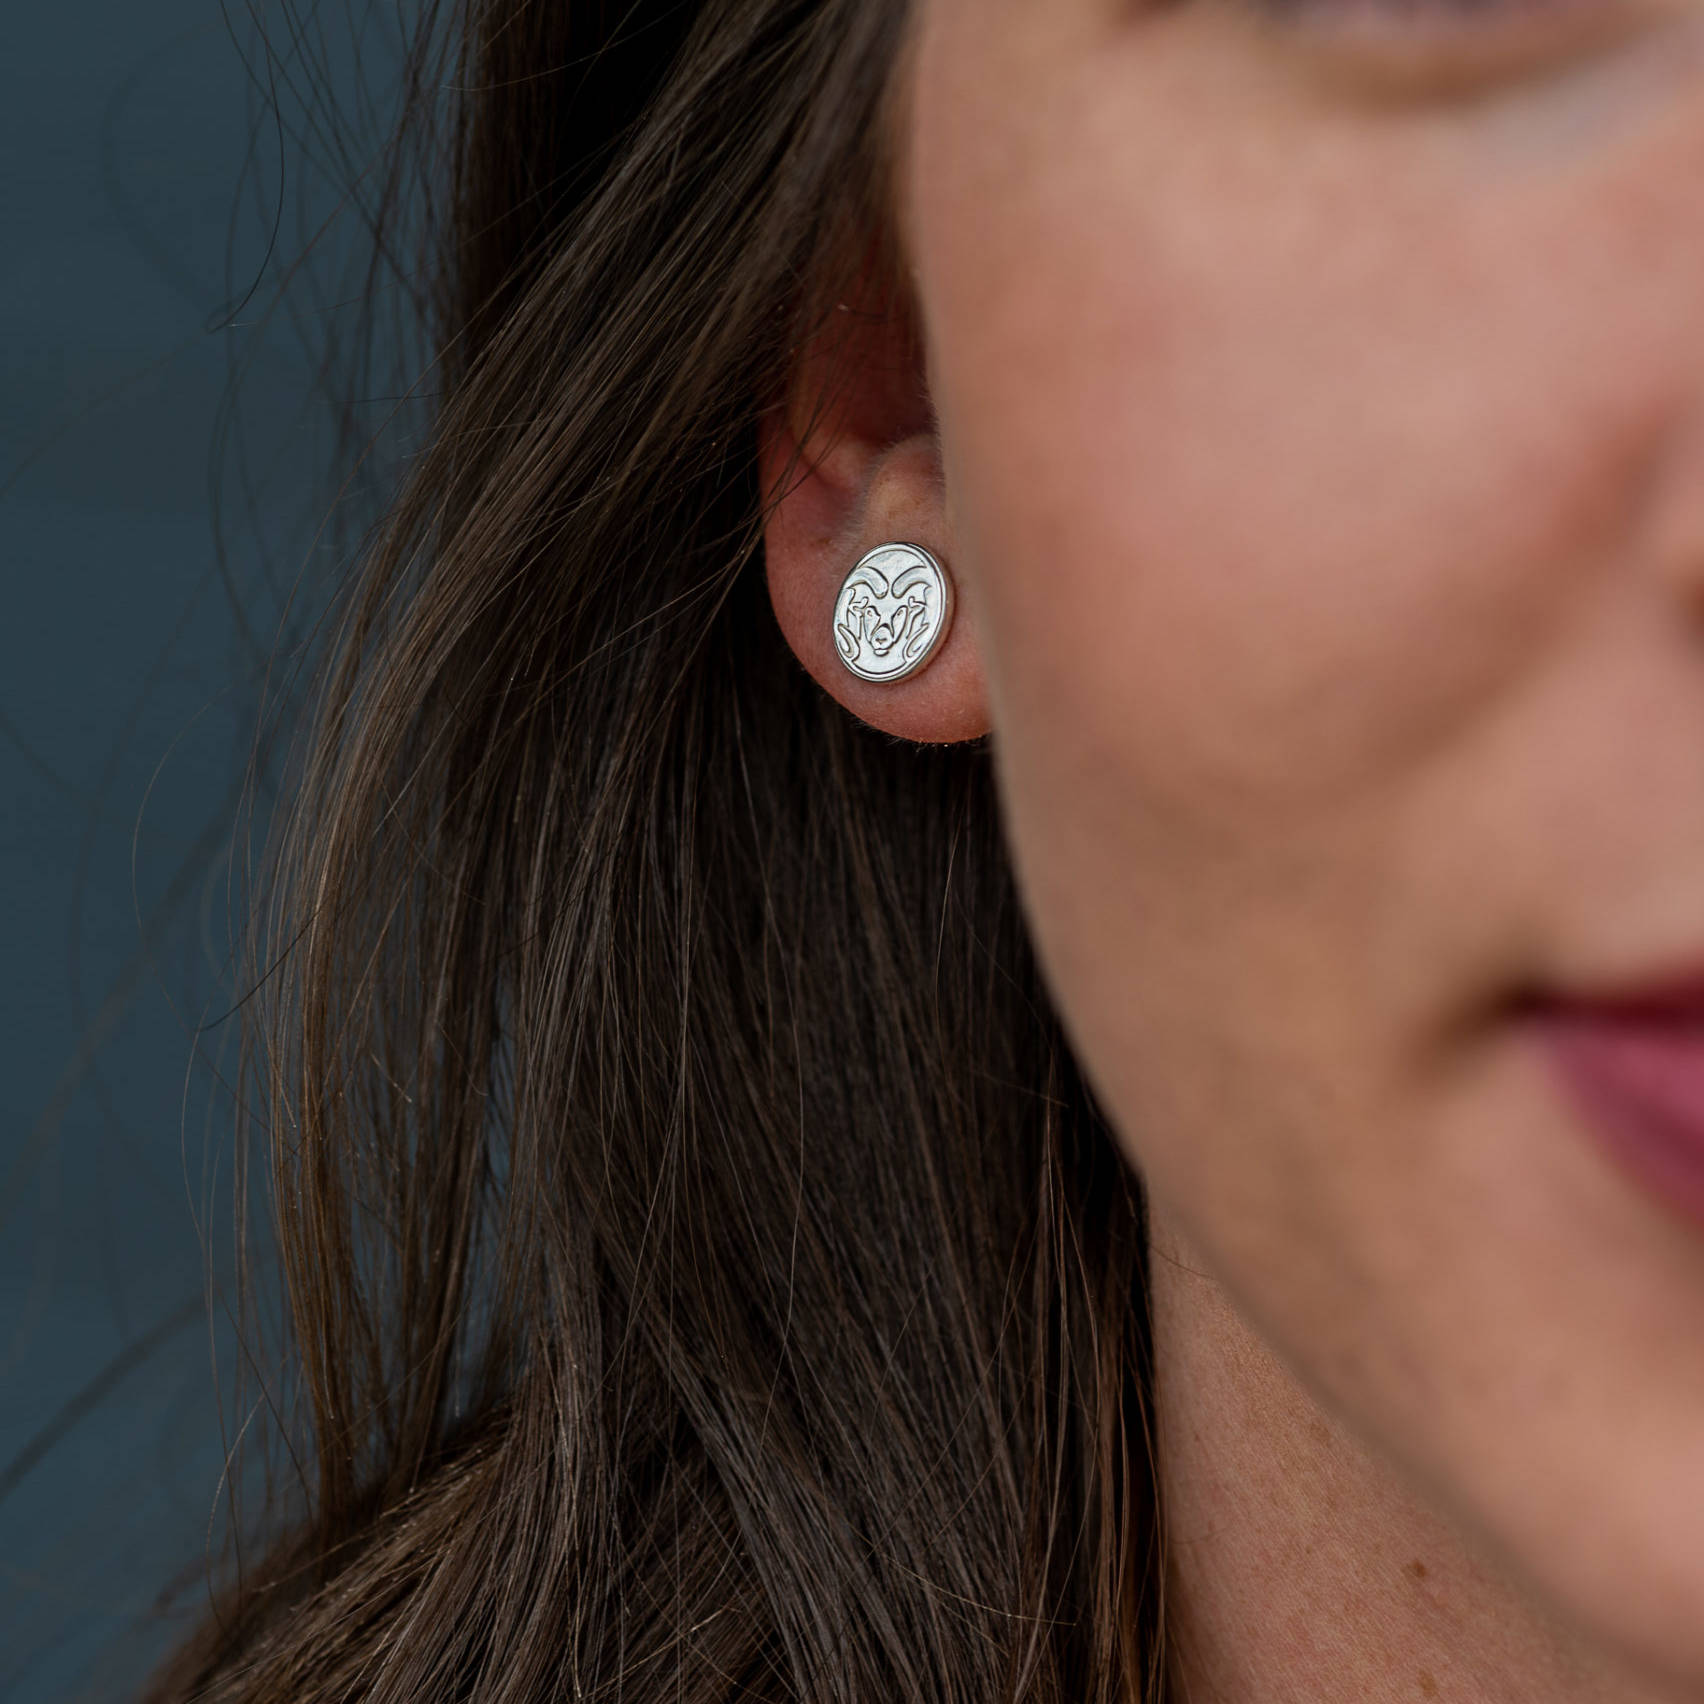 csu silver earring on womans ear